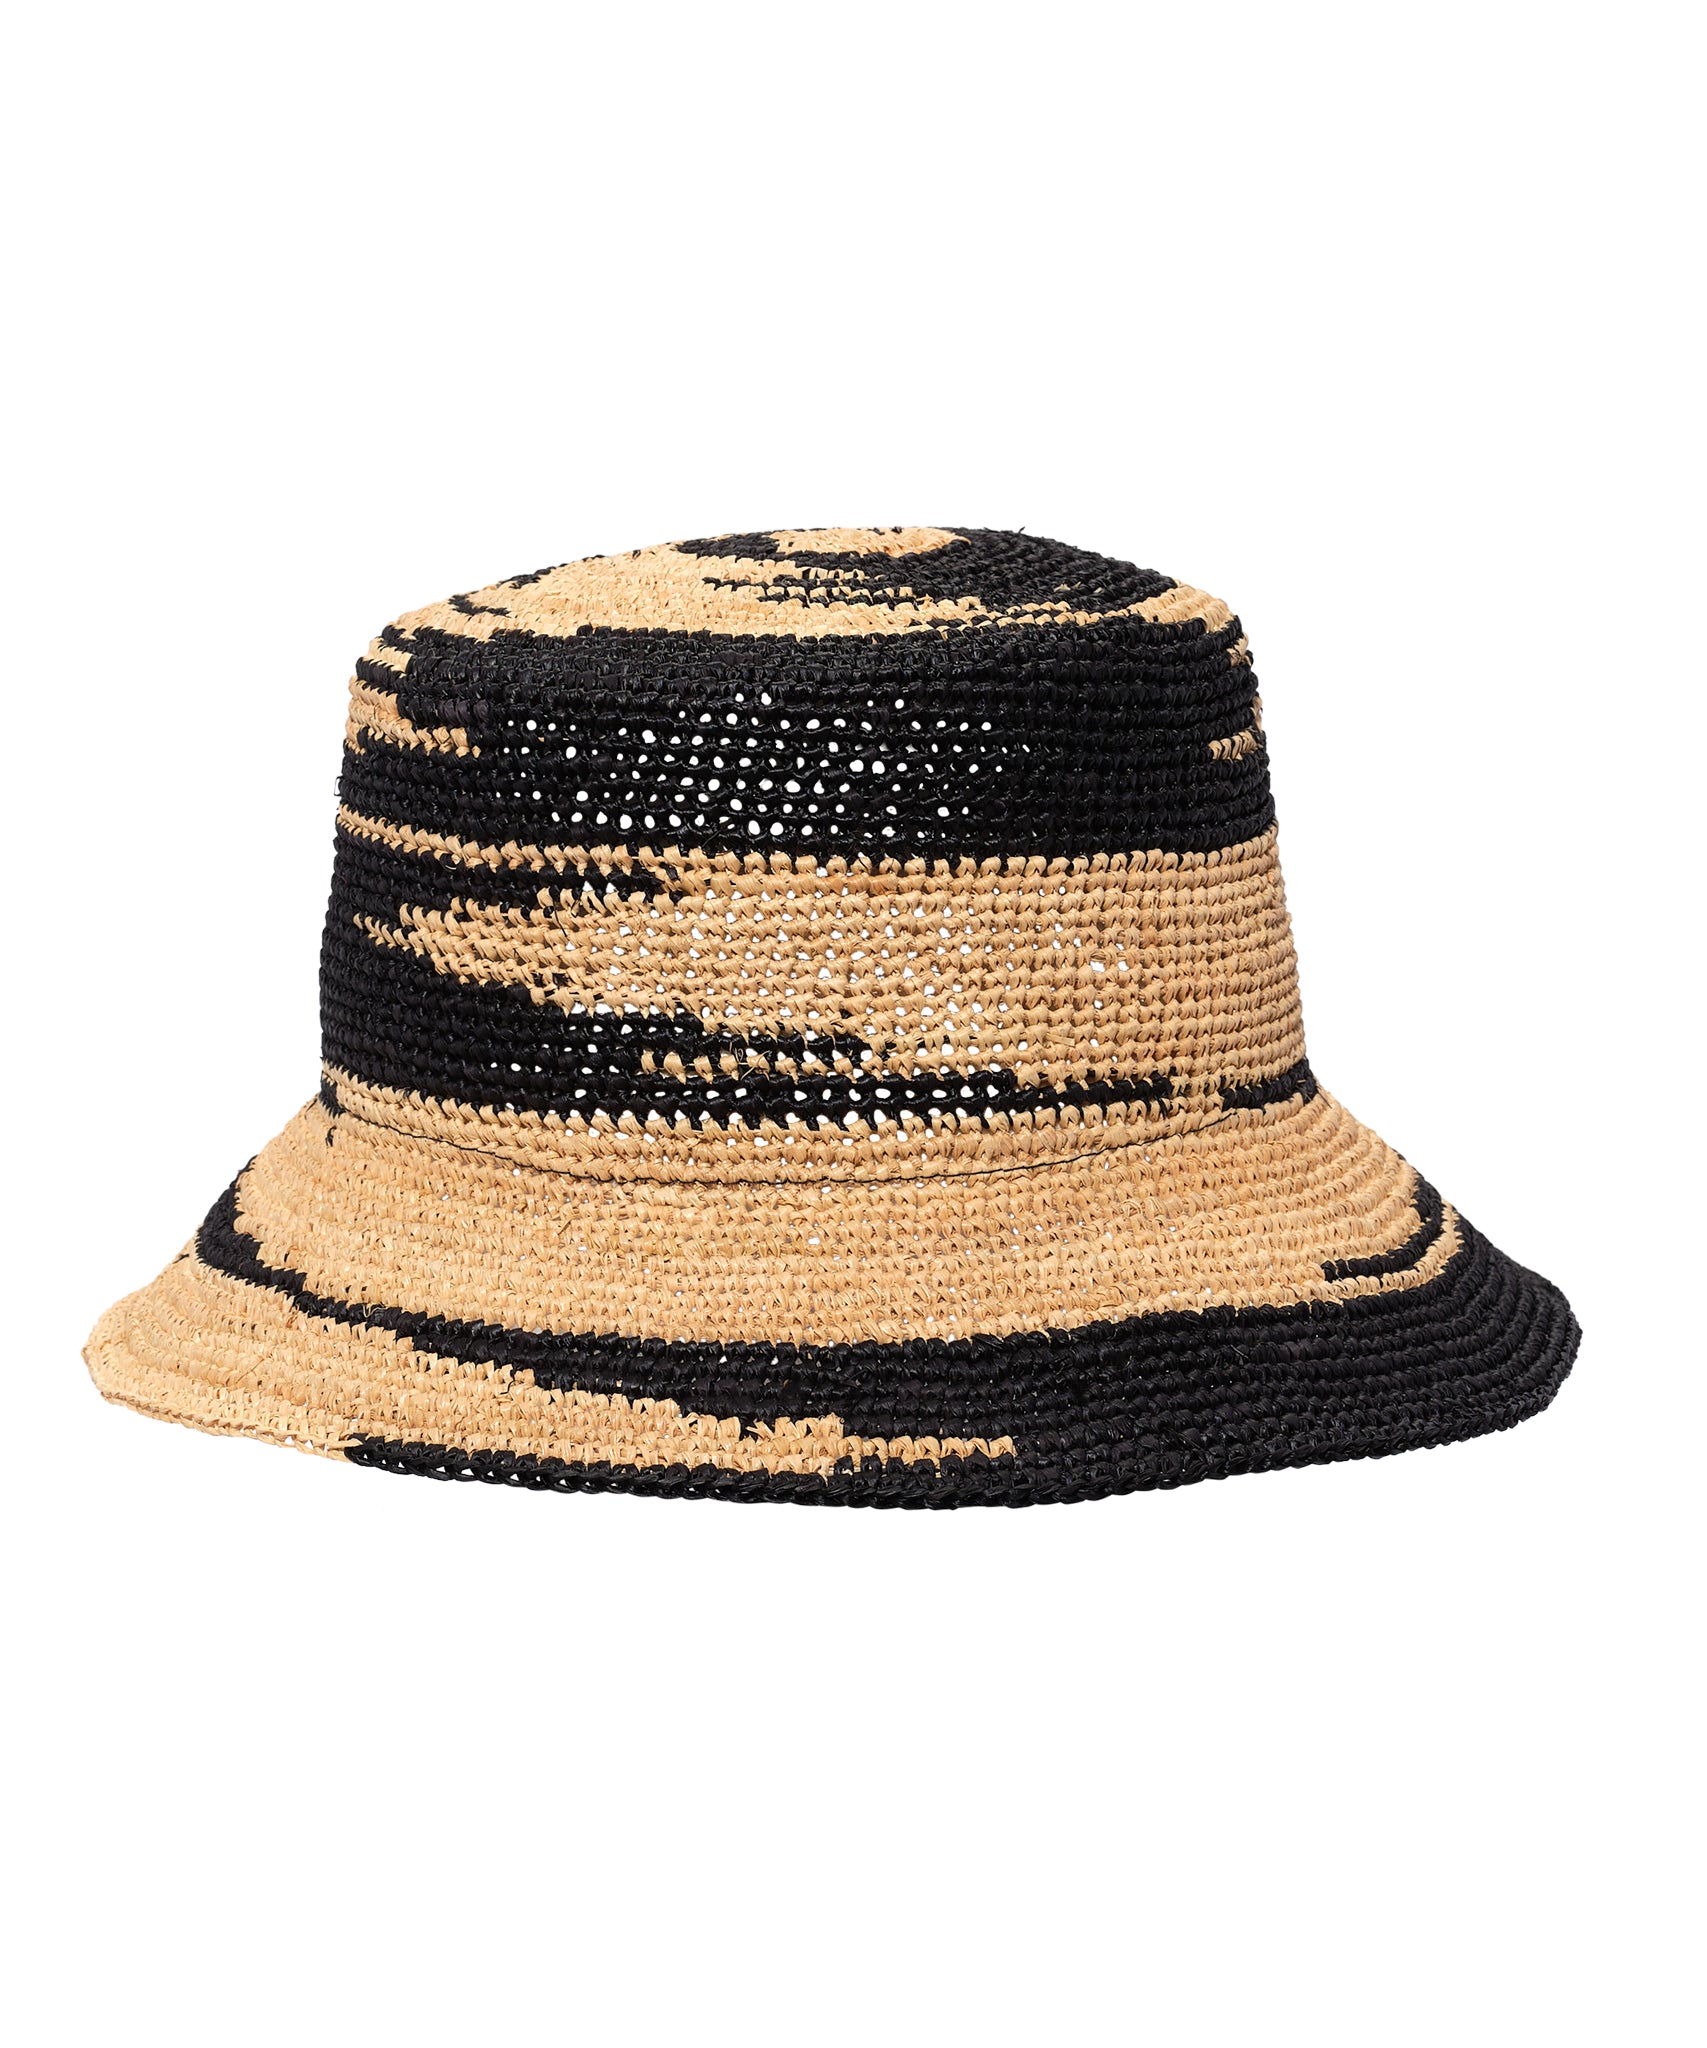 Bimini Bucket Hat in color black